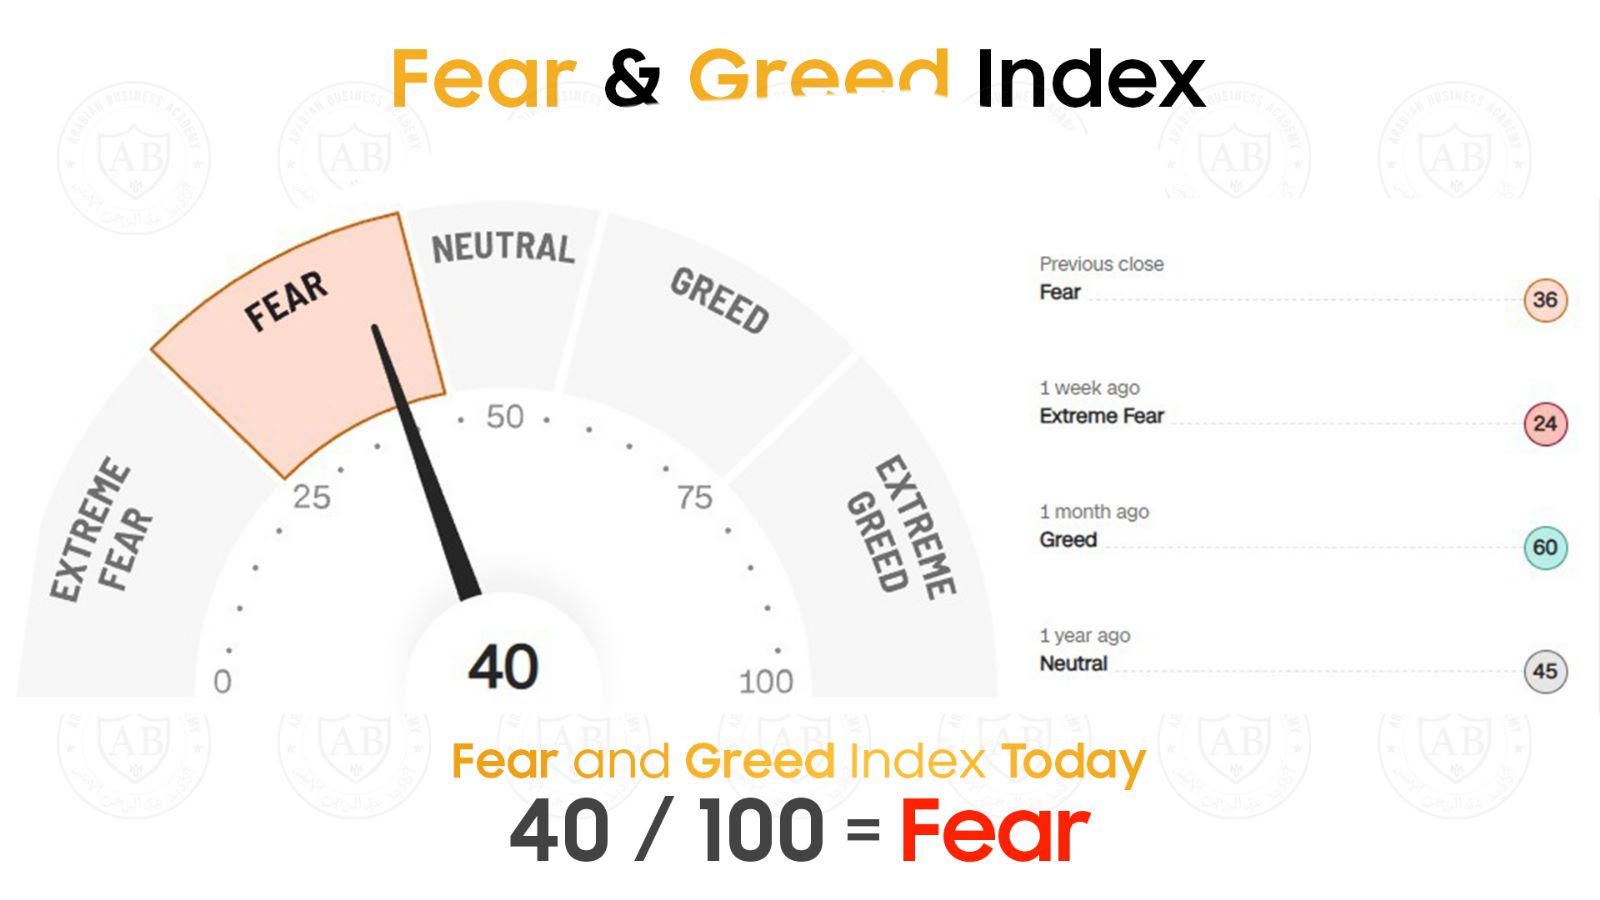 مؤشر  Fear and Greed  في أسواق الاسهم يشير  الى حالة خوف  40/100  لجلسة اليوم